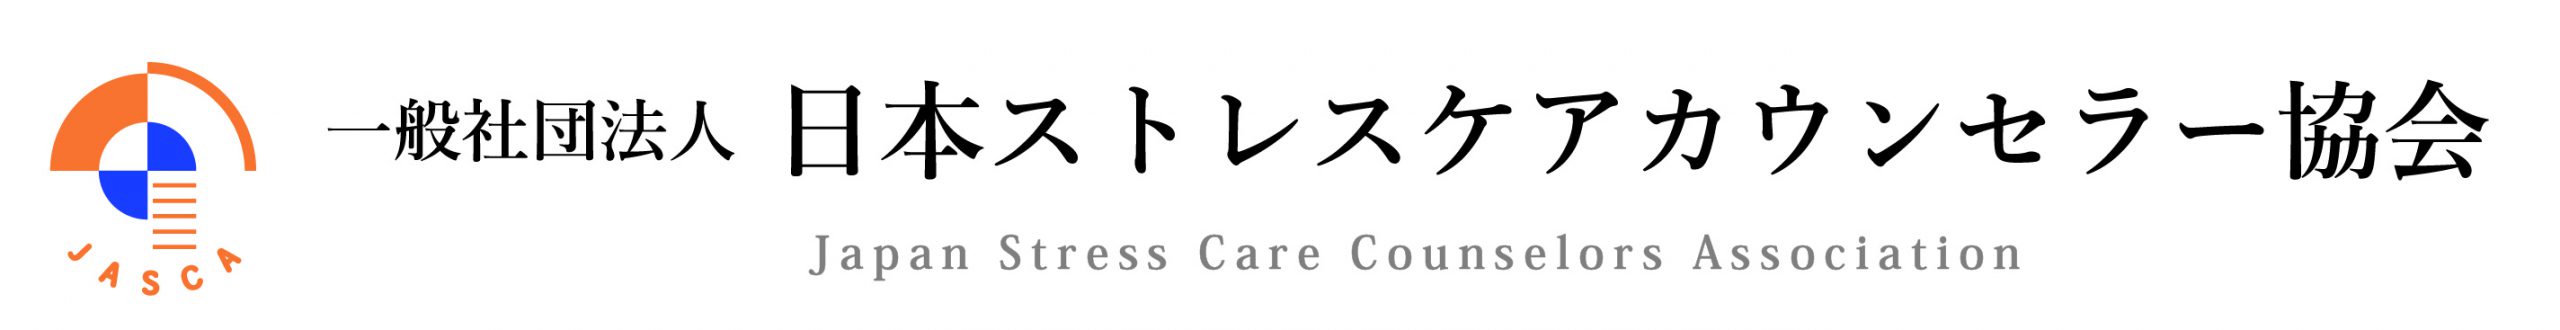 一般社団法人  日本ストレスケアカウンセラー協会